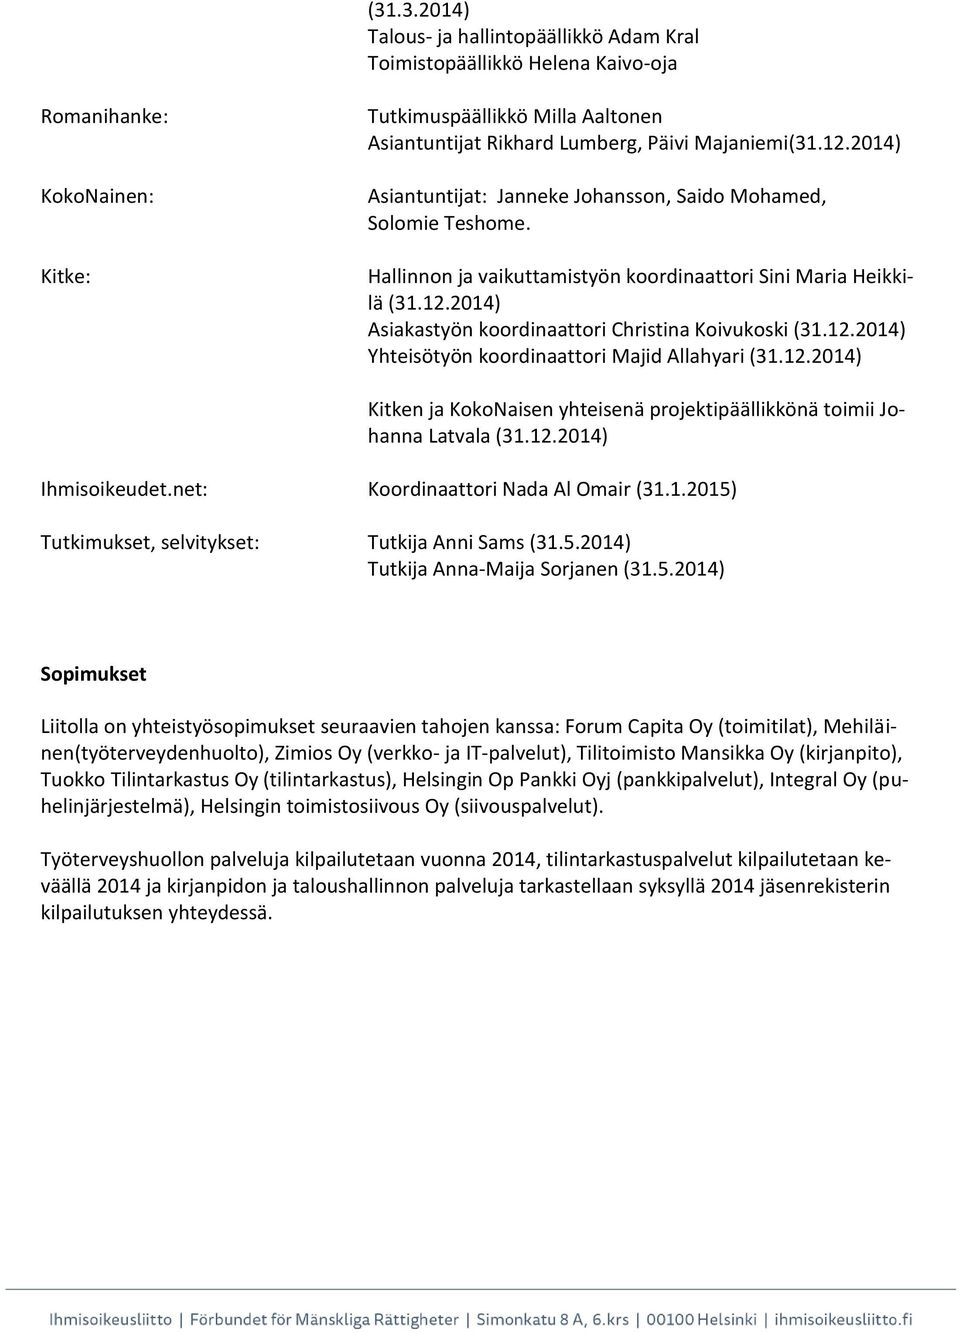 12.2014) Yhteisötyön koordinaattori Majid Allahyari (31.12.2014) Kitken ja KokoNaisen yhteisenä projektipäällikkönä toimii Johanna Latvala (31.12.2014) Ihmisoikeudet.